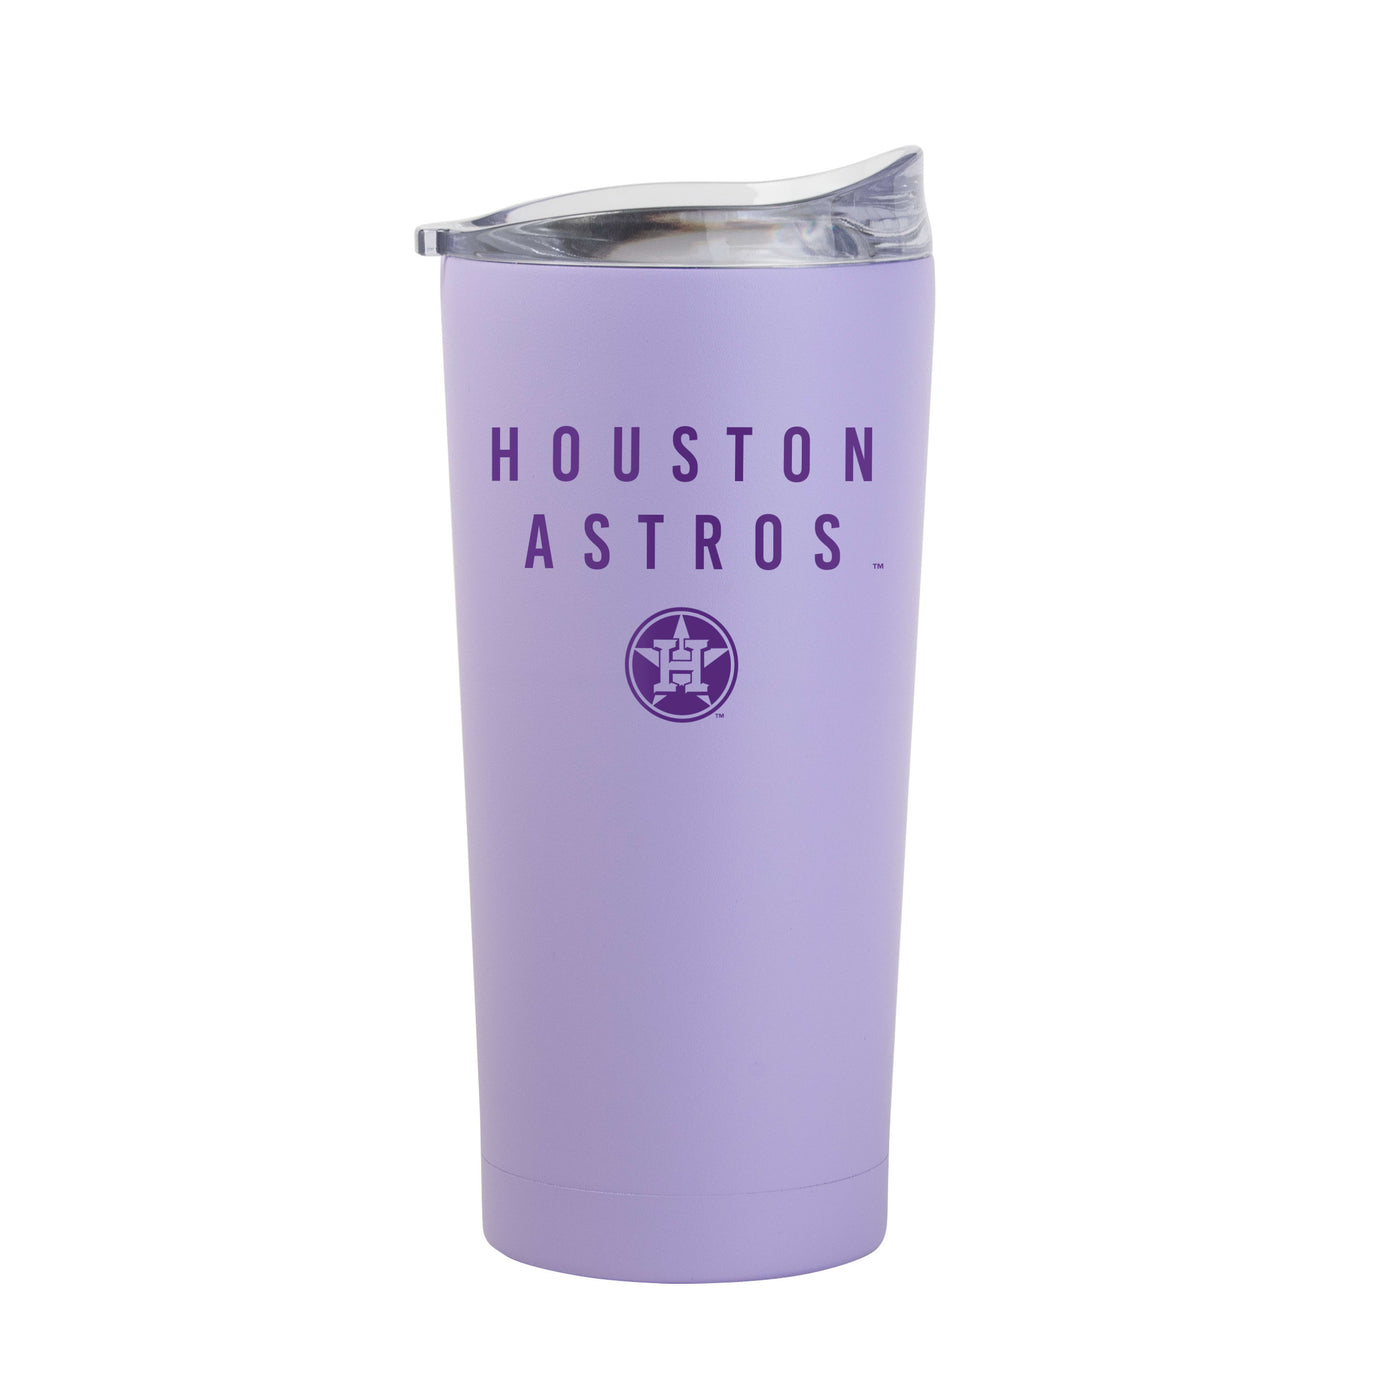 Houston Astros 20oz Tonal Lavender Powder Coat Tumbler